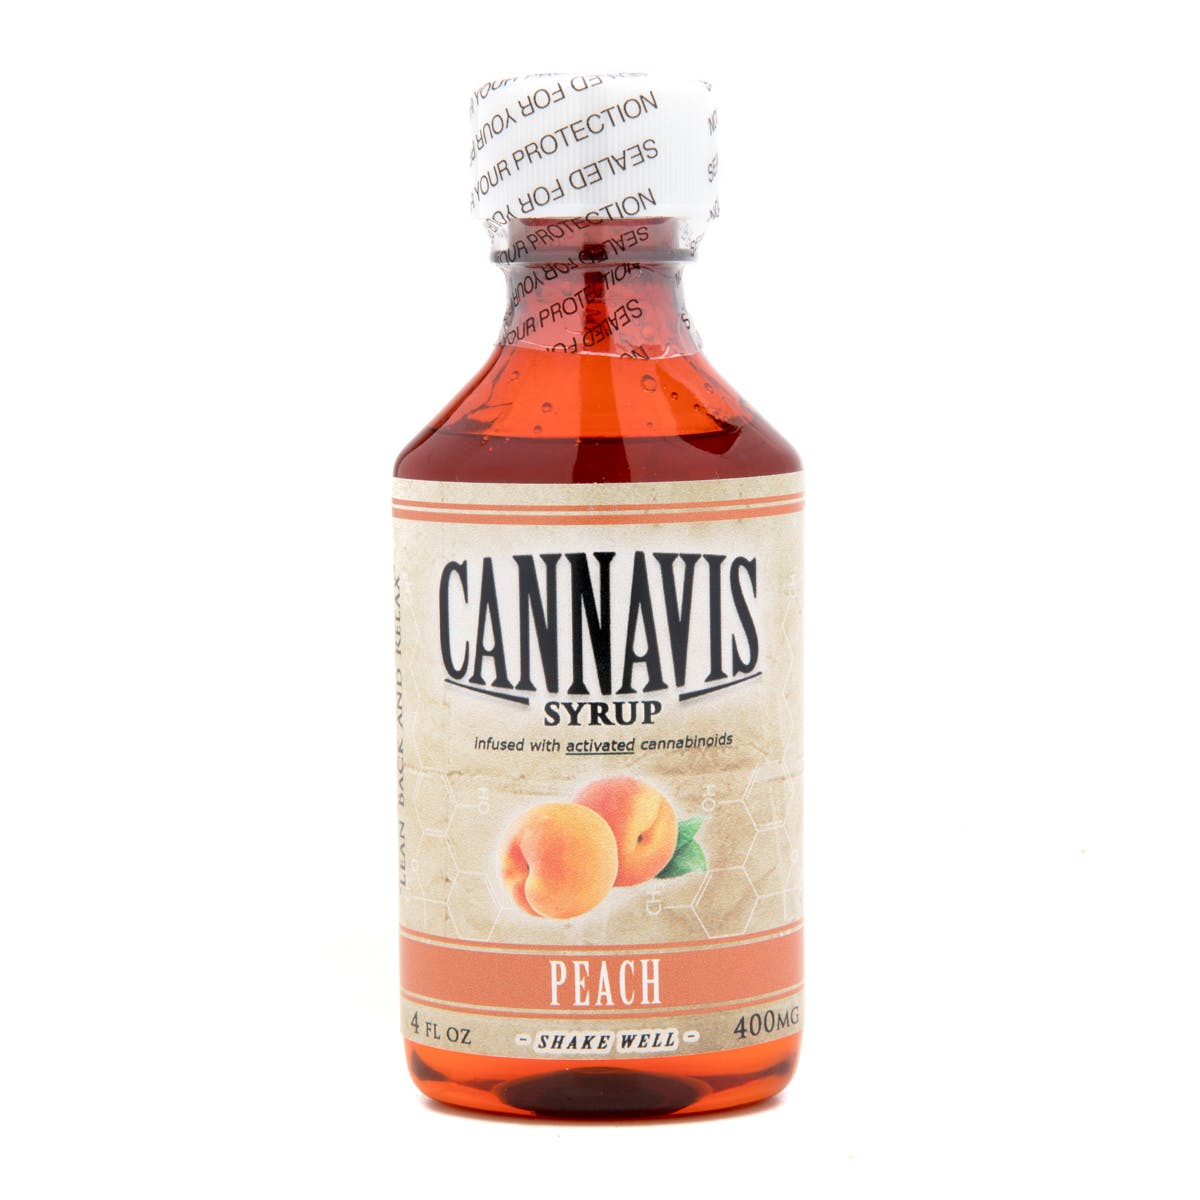 Cannavis Syrup, Peach 400mg